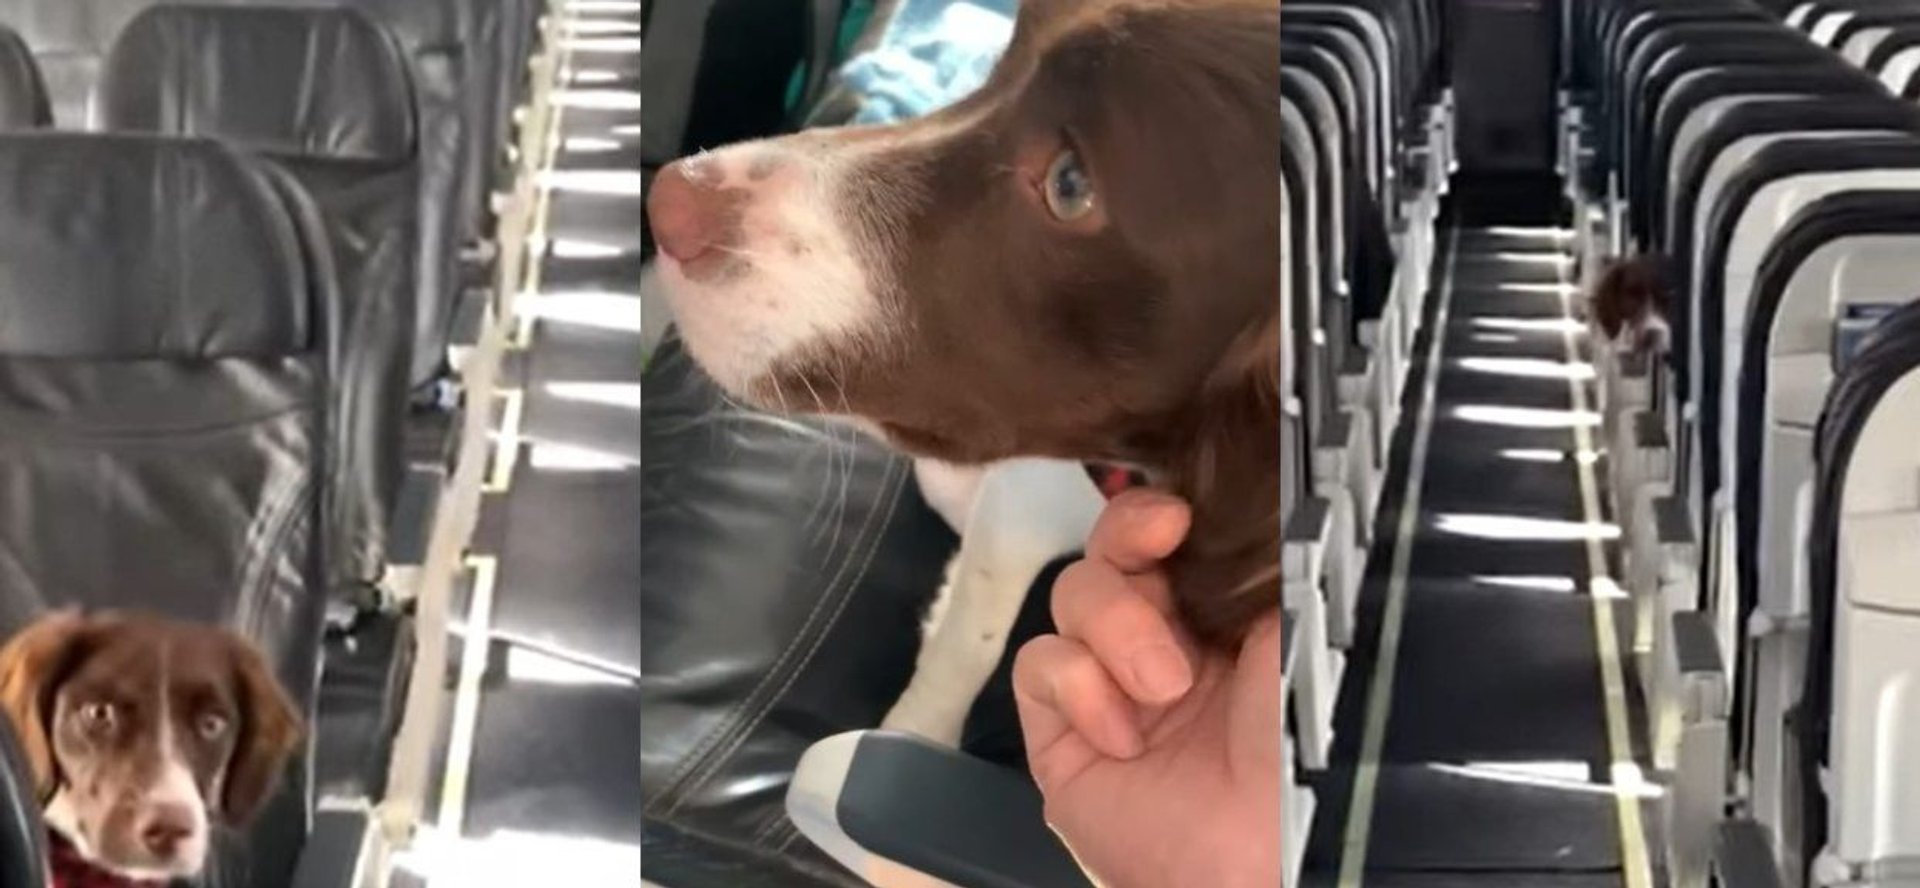 Stewardessa bawiła się z psem w chowanego